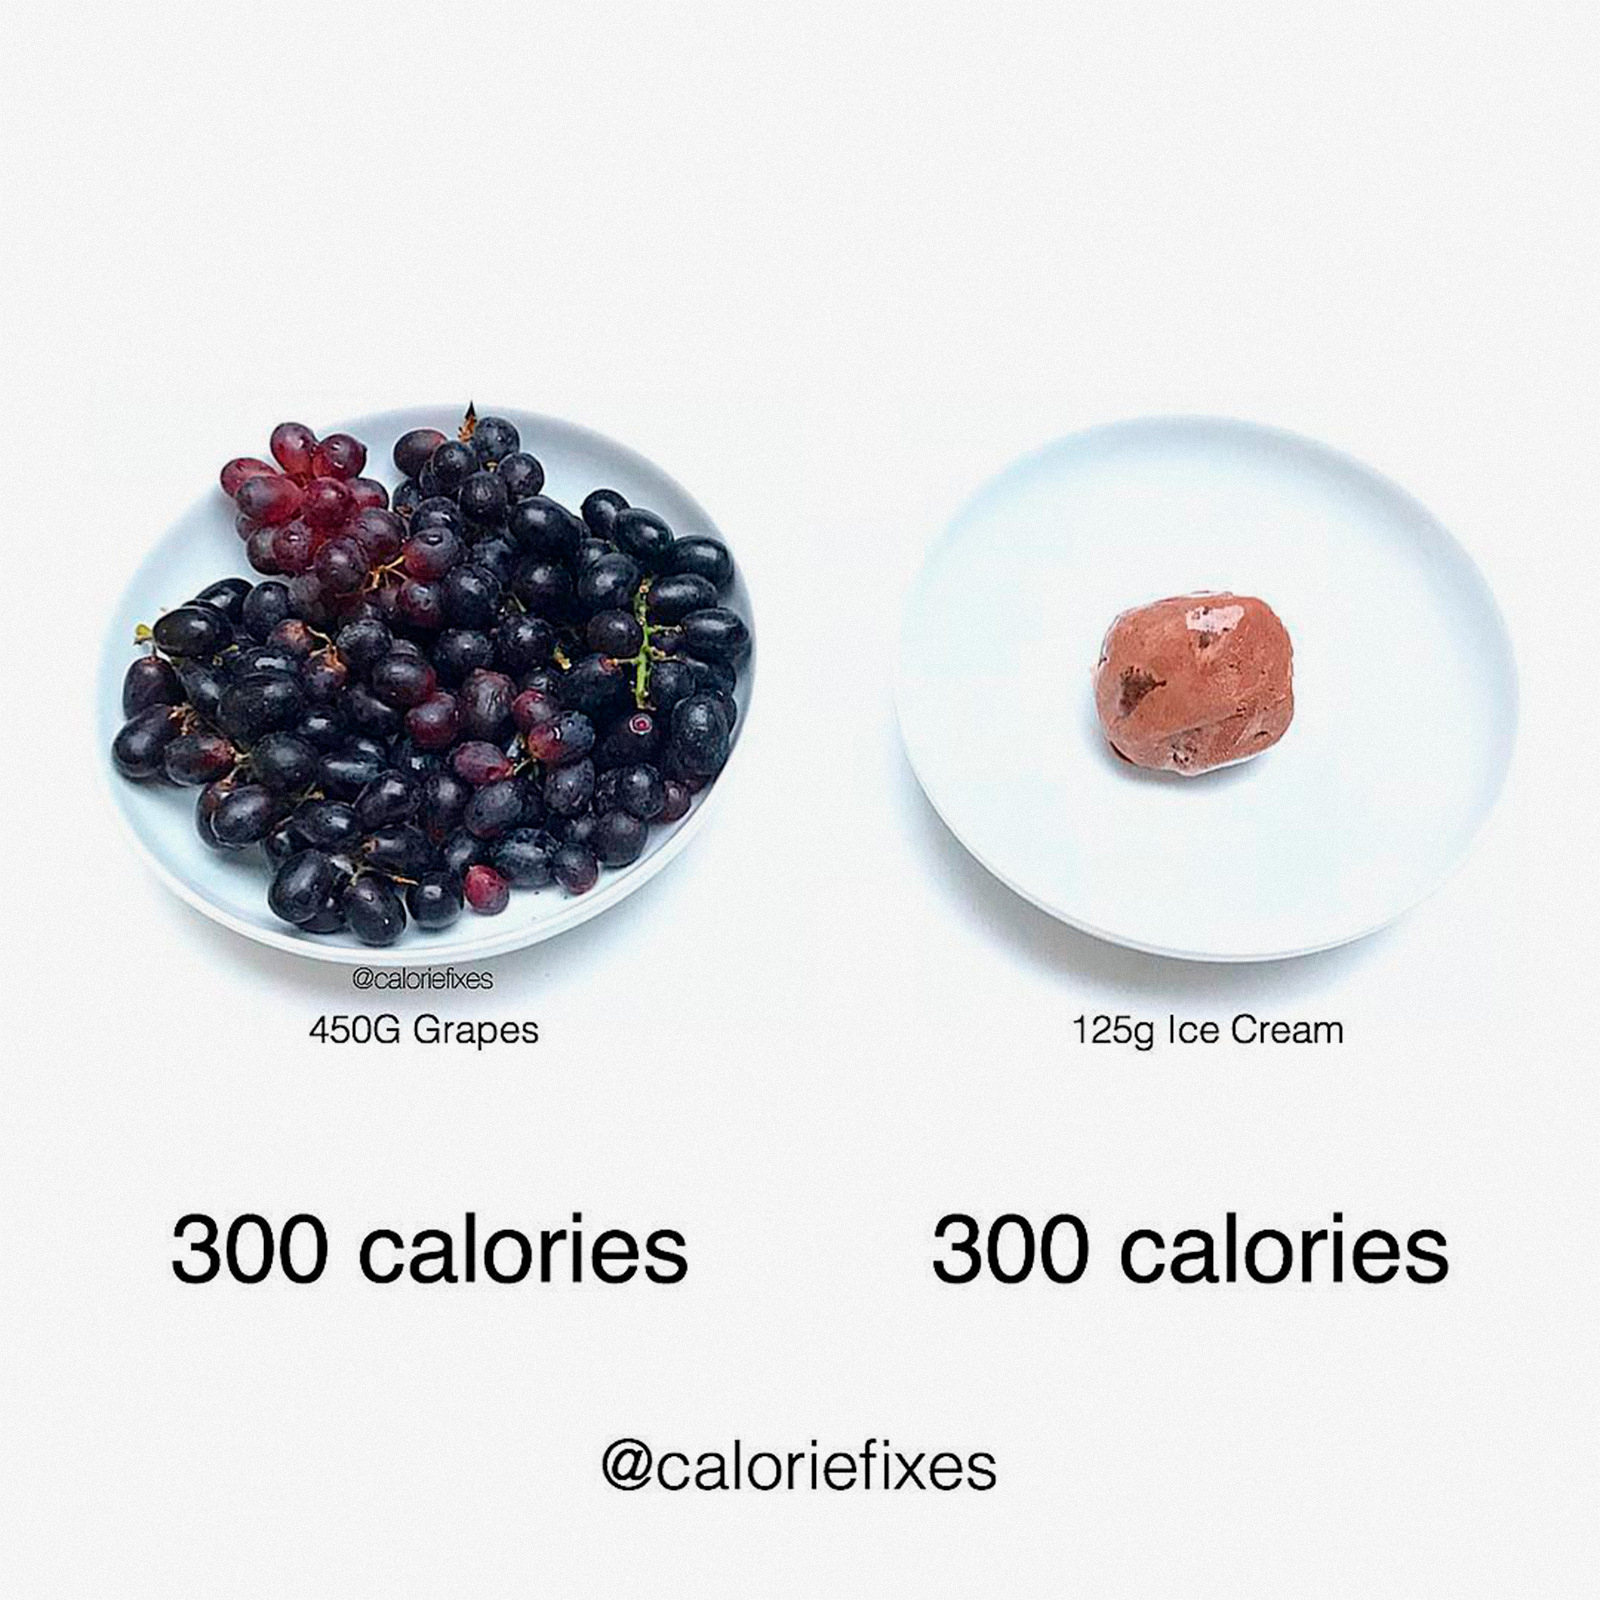 Инстаграм недели: суровая правда о калориях в аккаунте Caloriefixes